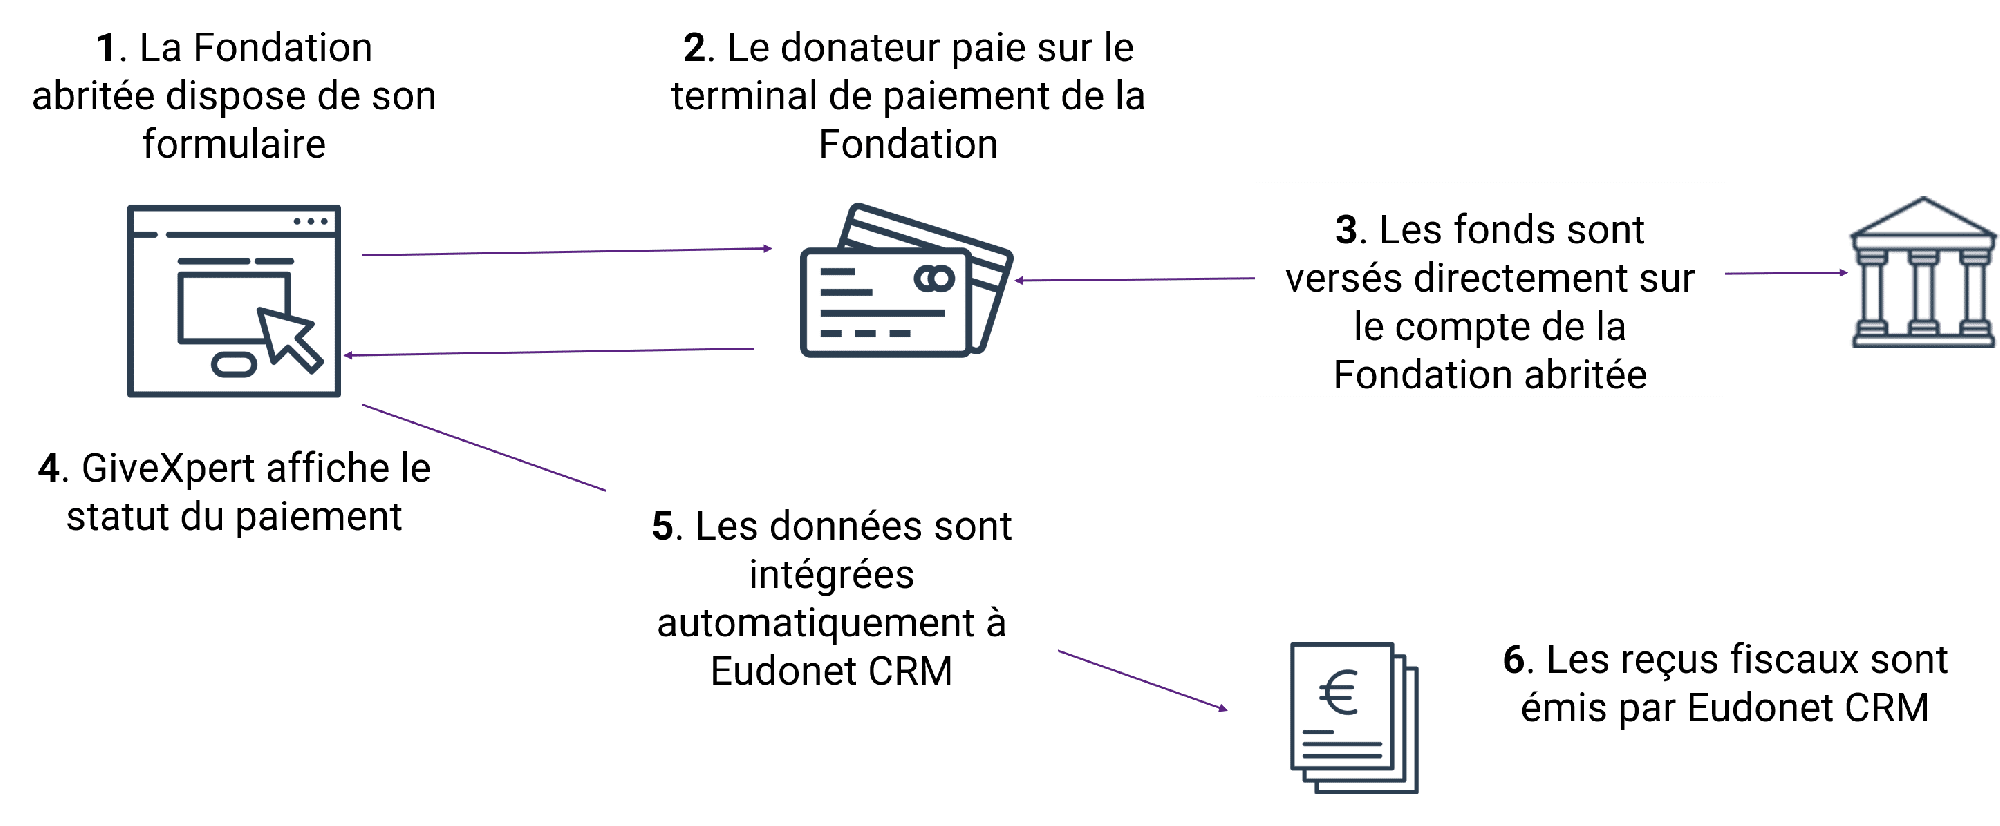 Le parcours donateur en ligne entre GiveXpert et Eudonet CRM pour les fondations abritantes et fondations abritées ou fondations sous-égide